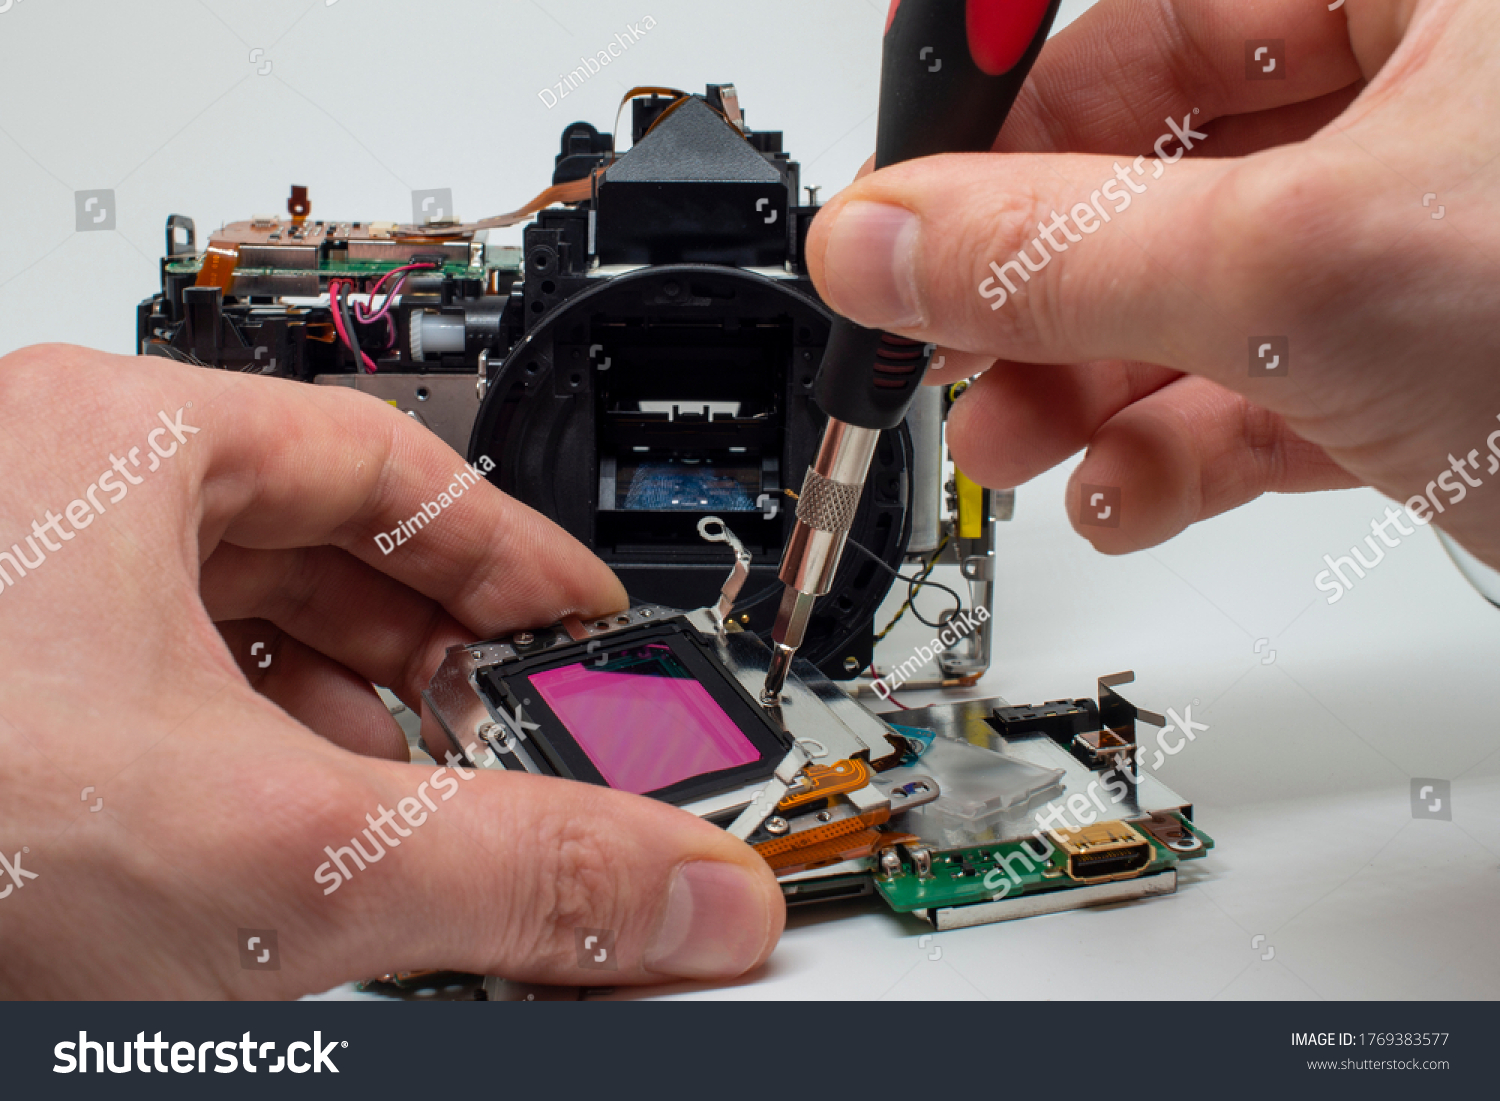 Taking apart and repairing digital camera. Close up image of camera parts. #1769383577